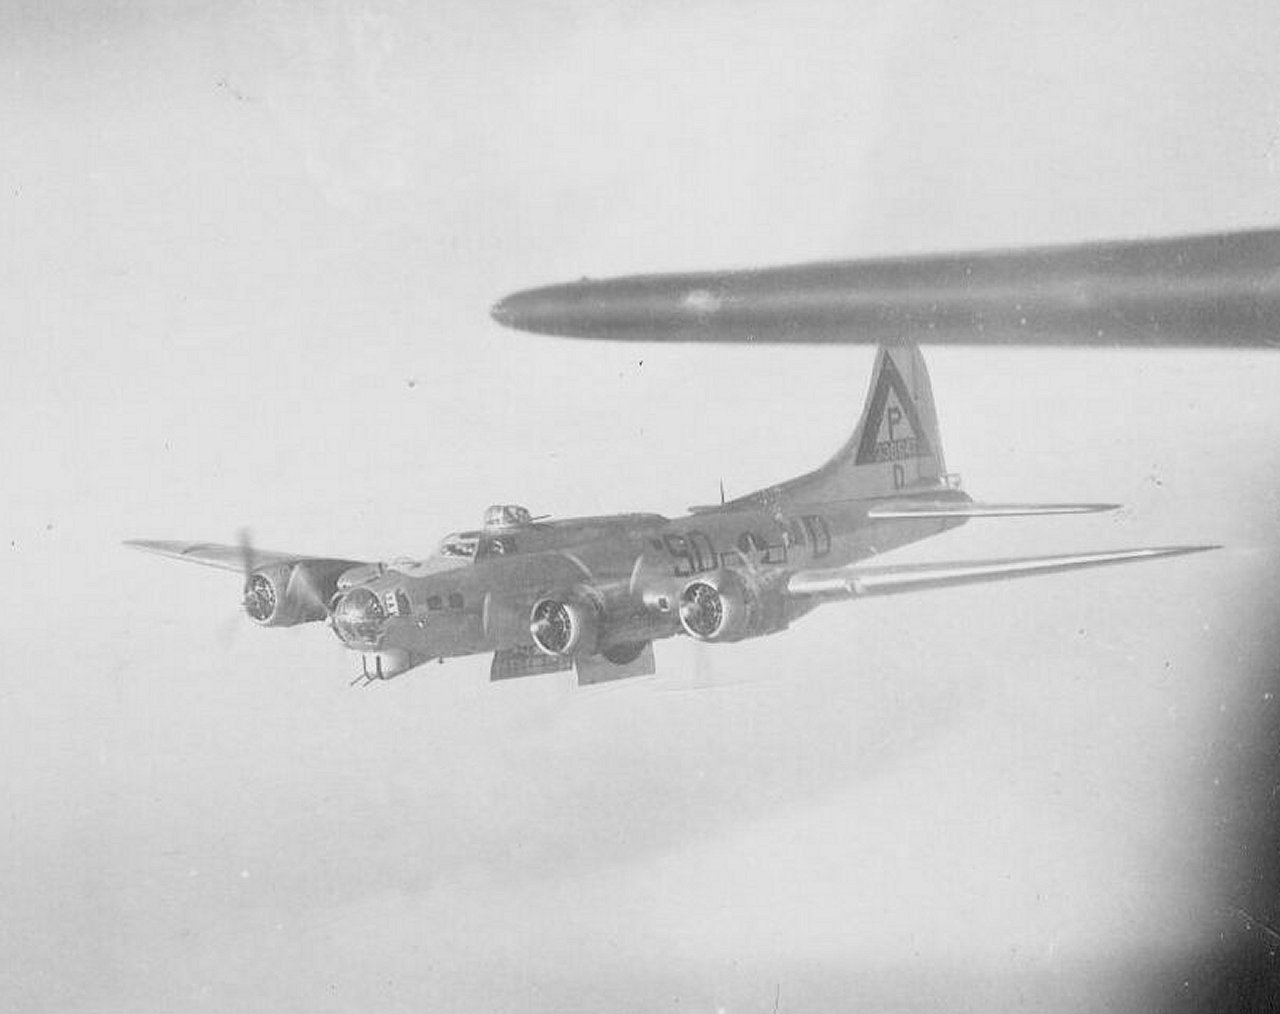 B-17 #43-38647